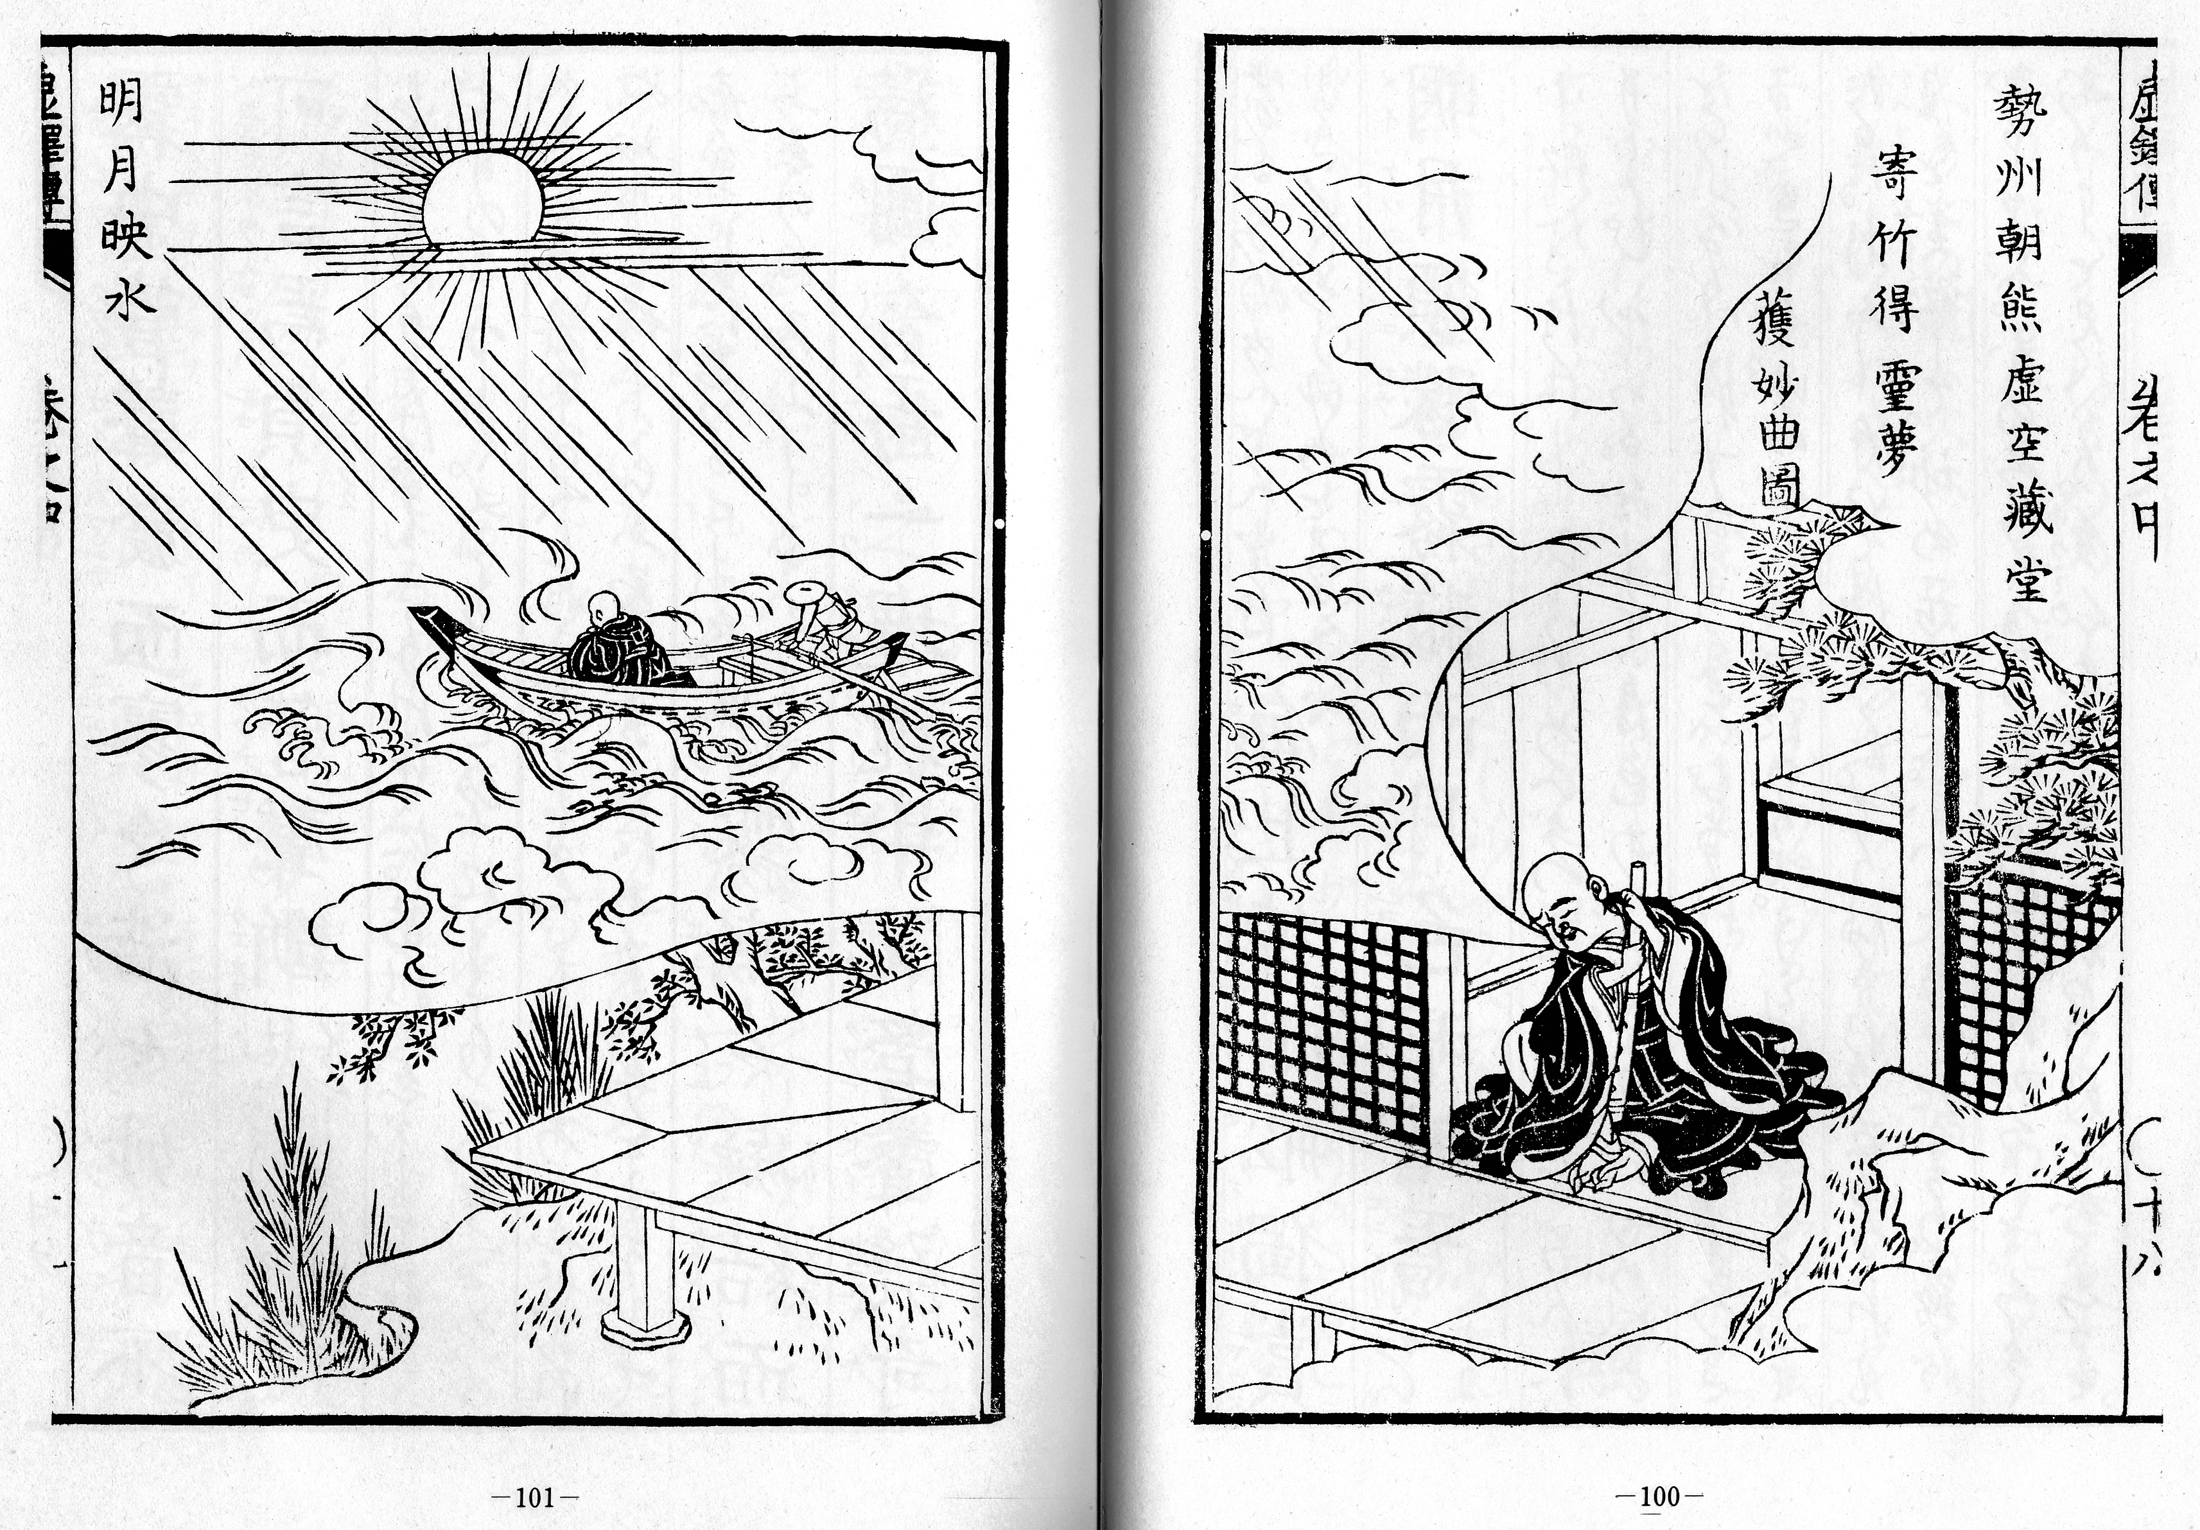 Kyotaku denki kokujikai illustration pp. 100-101